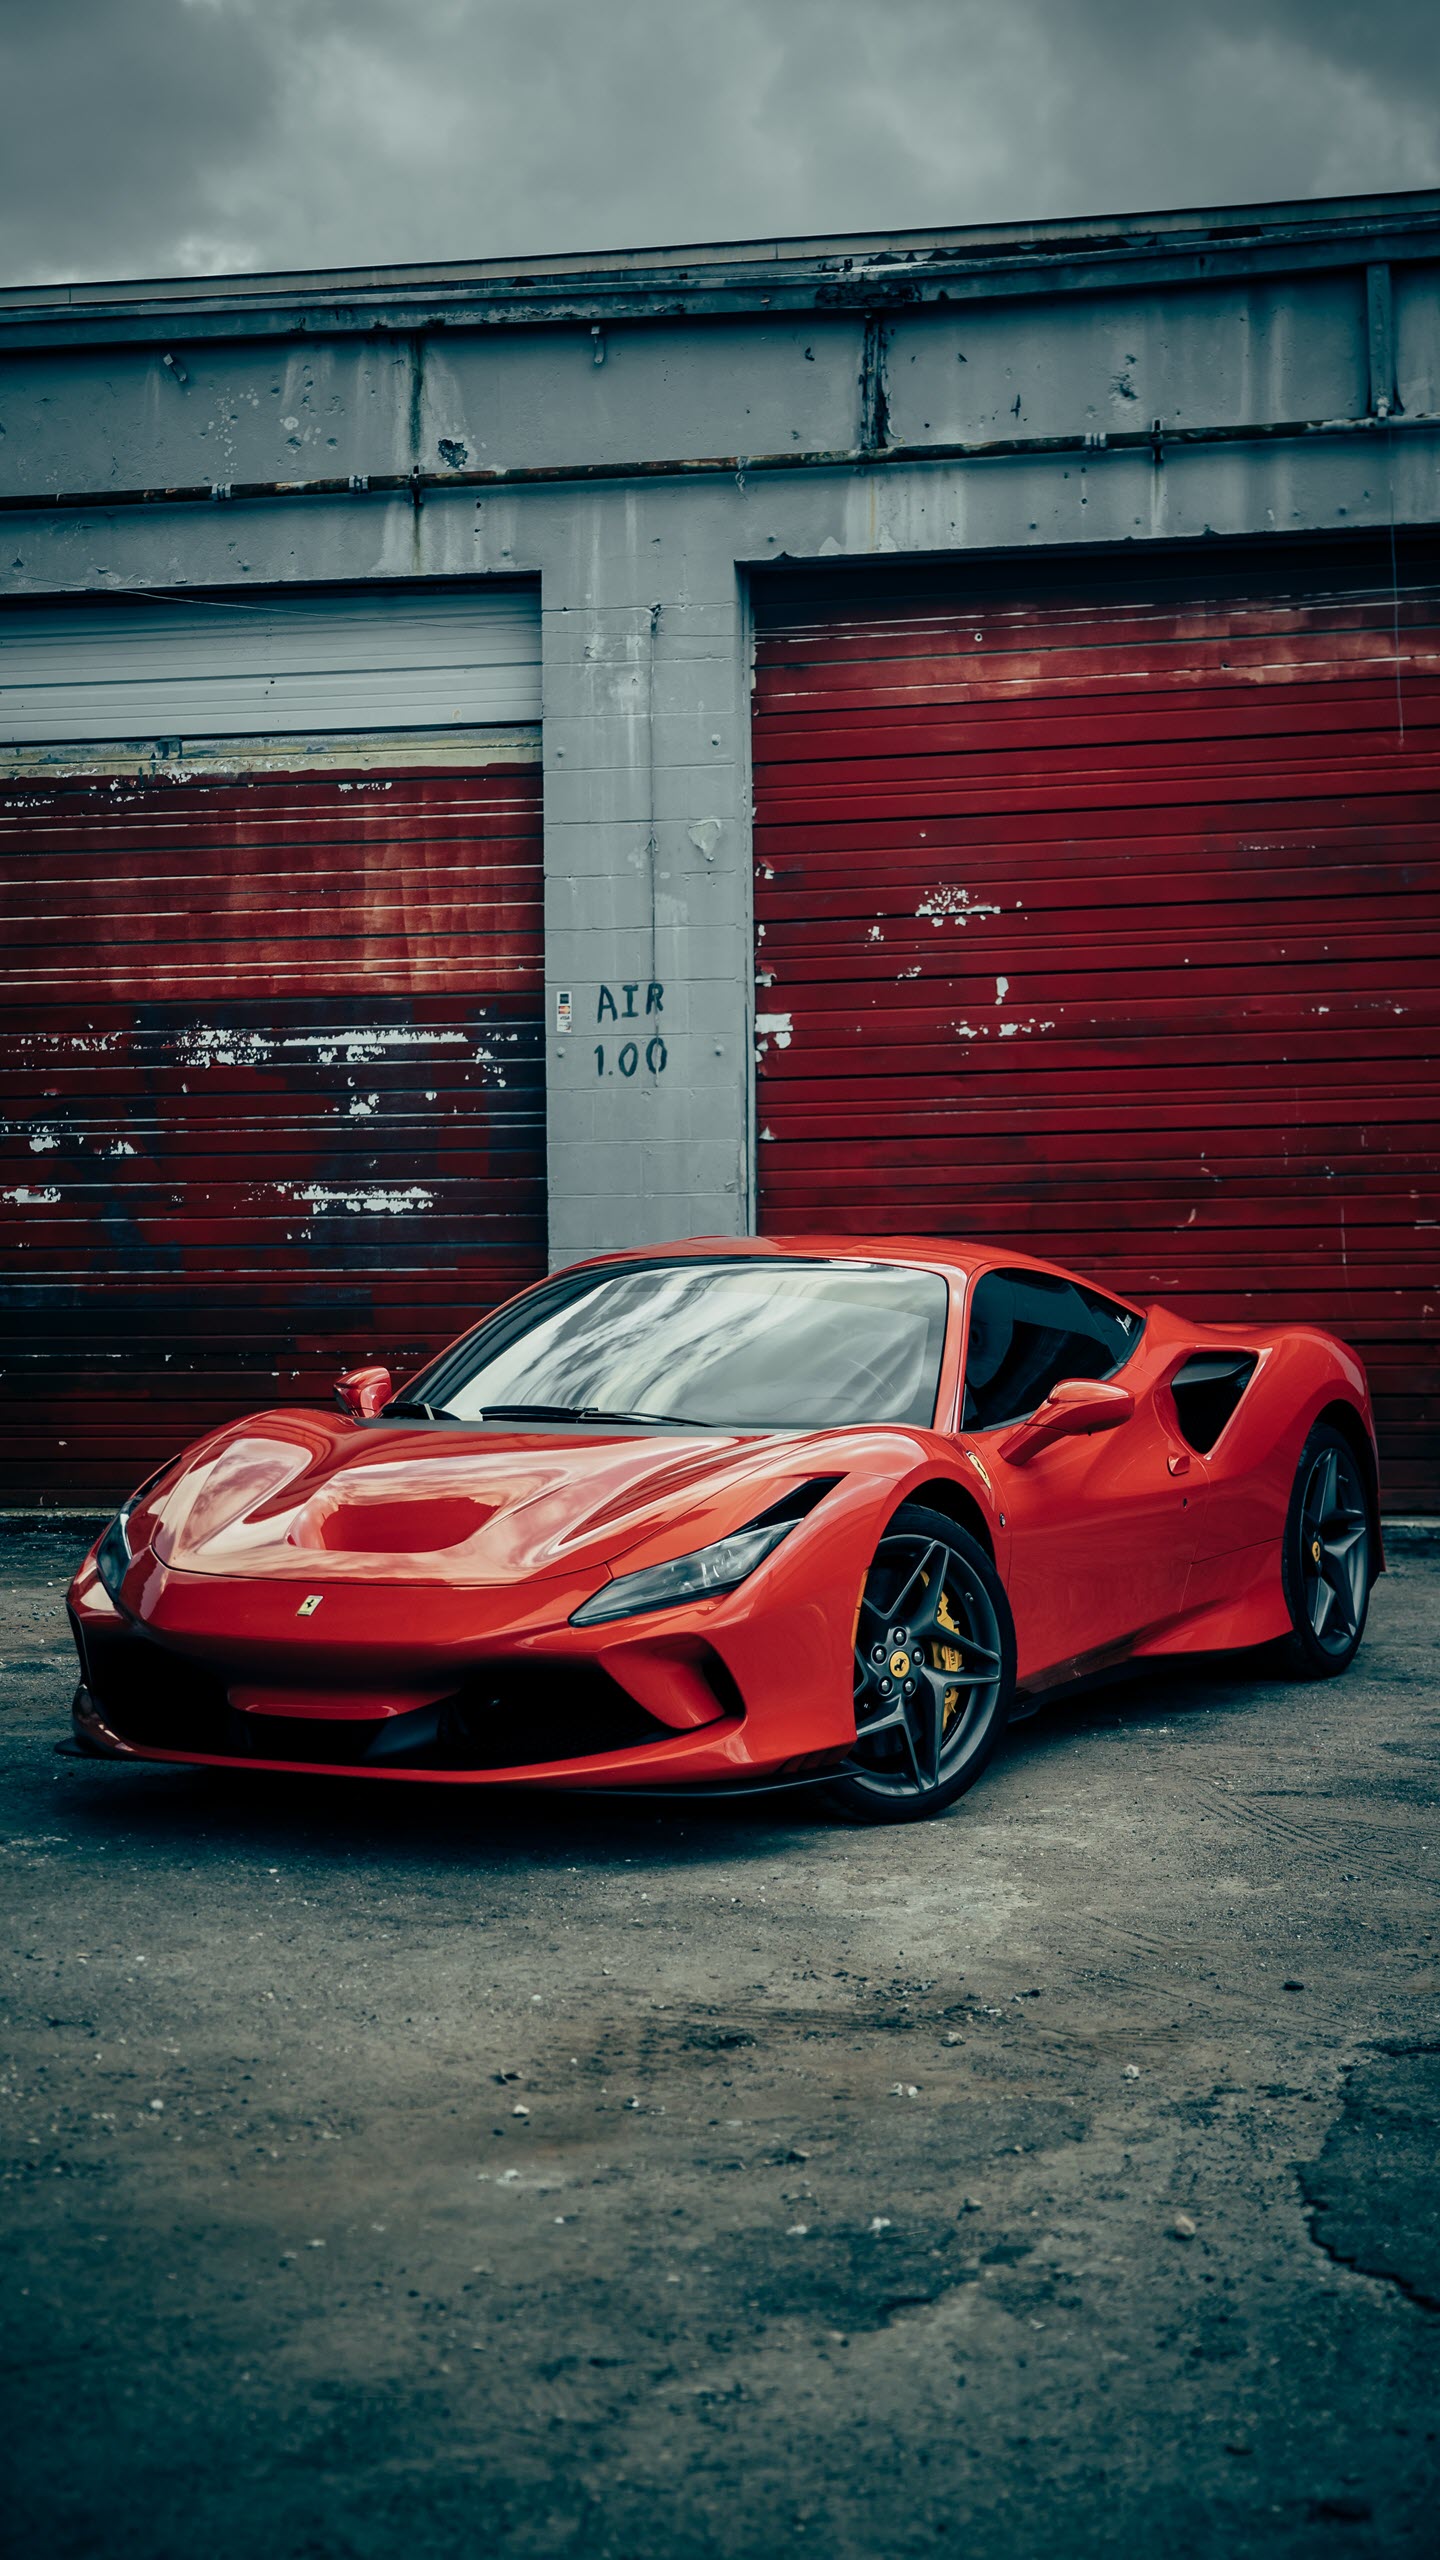 Ferrari bắt tay nhà thiết kế iPhone chuẩn bị cho dự án siêu xe điện   AutoMotorVN